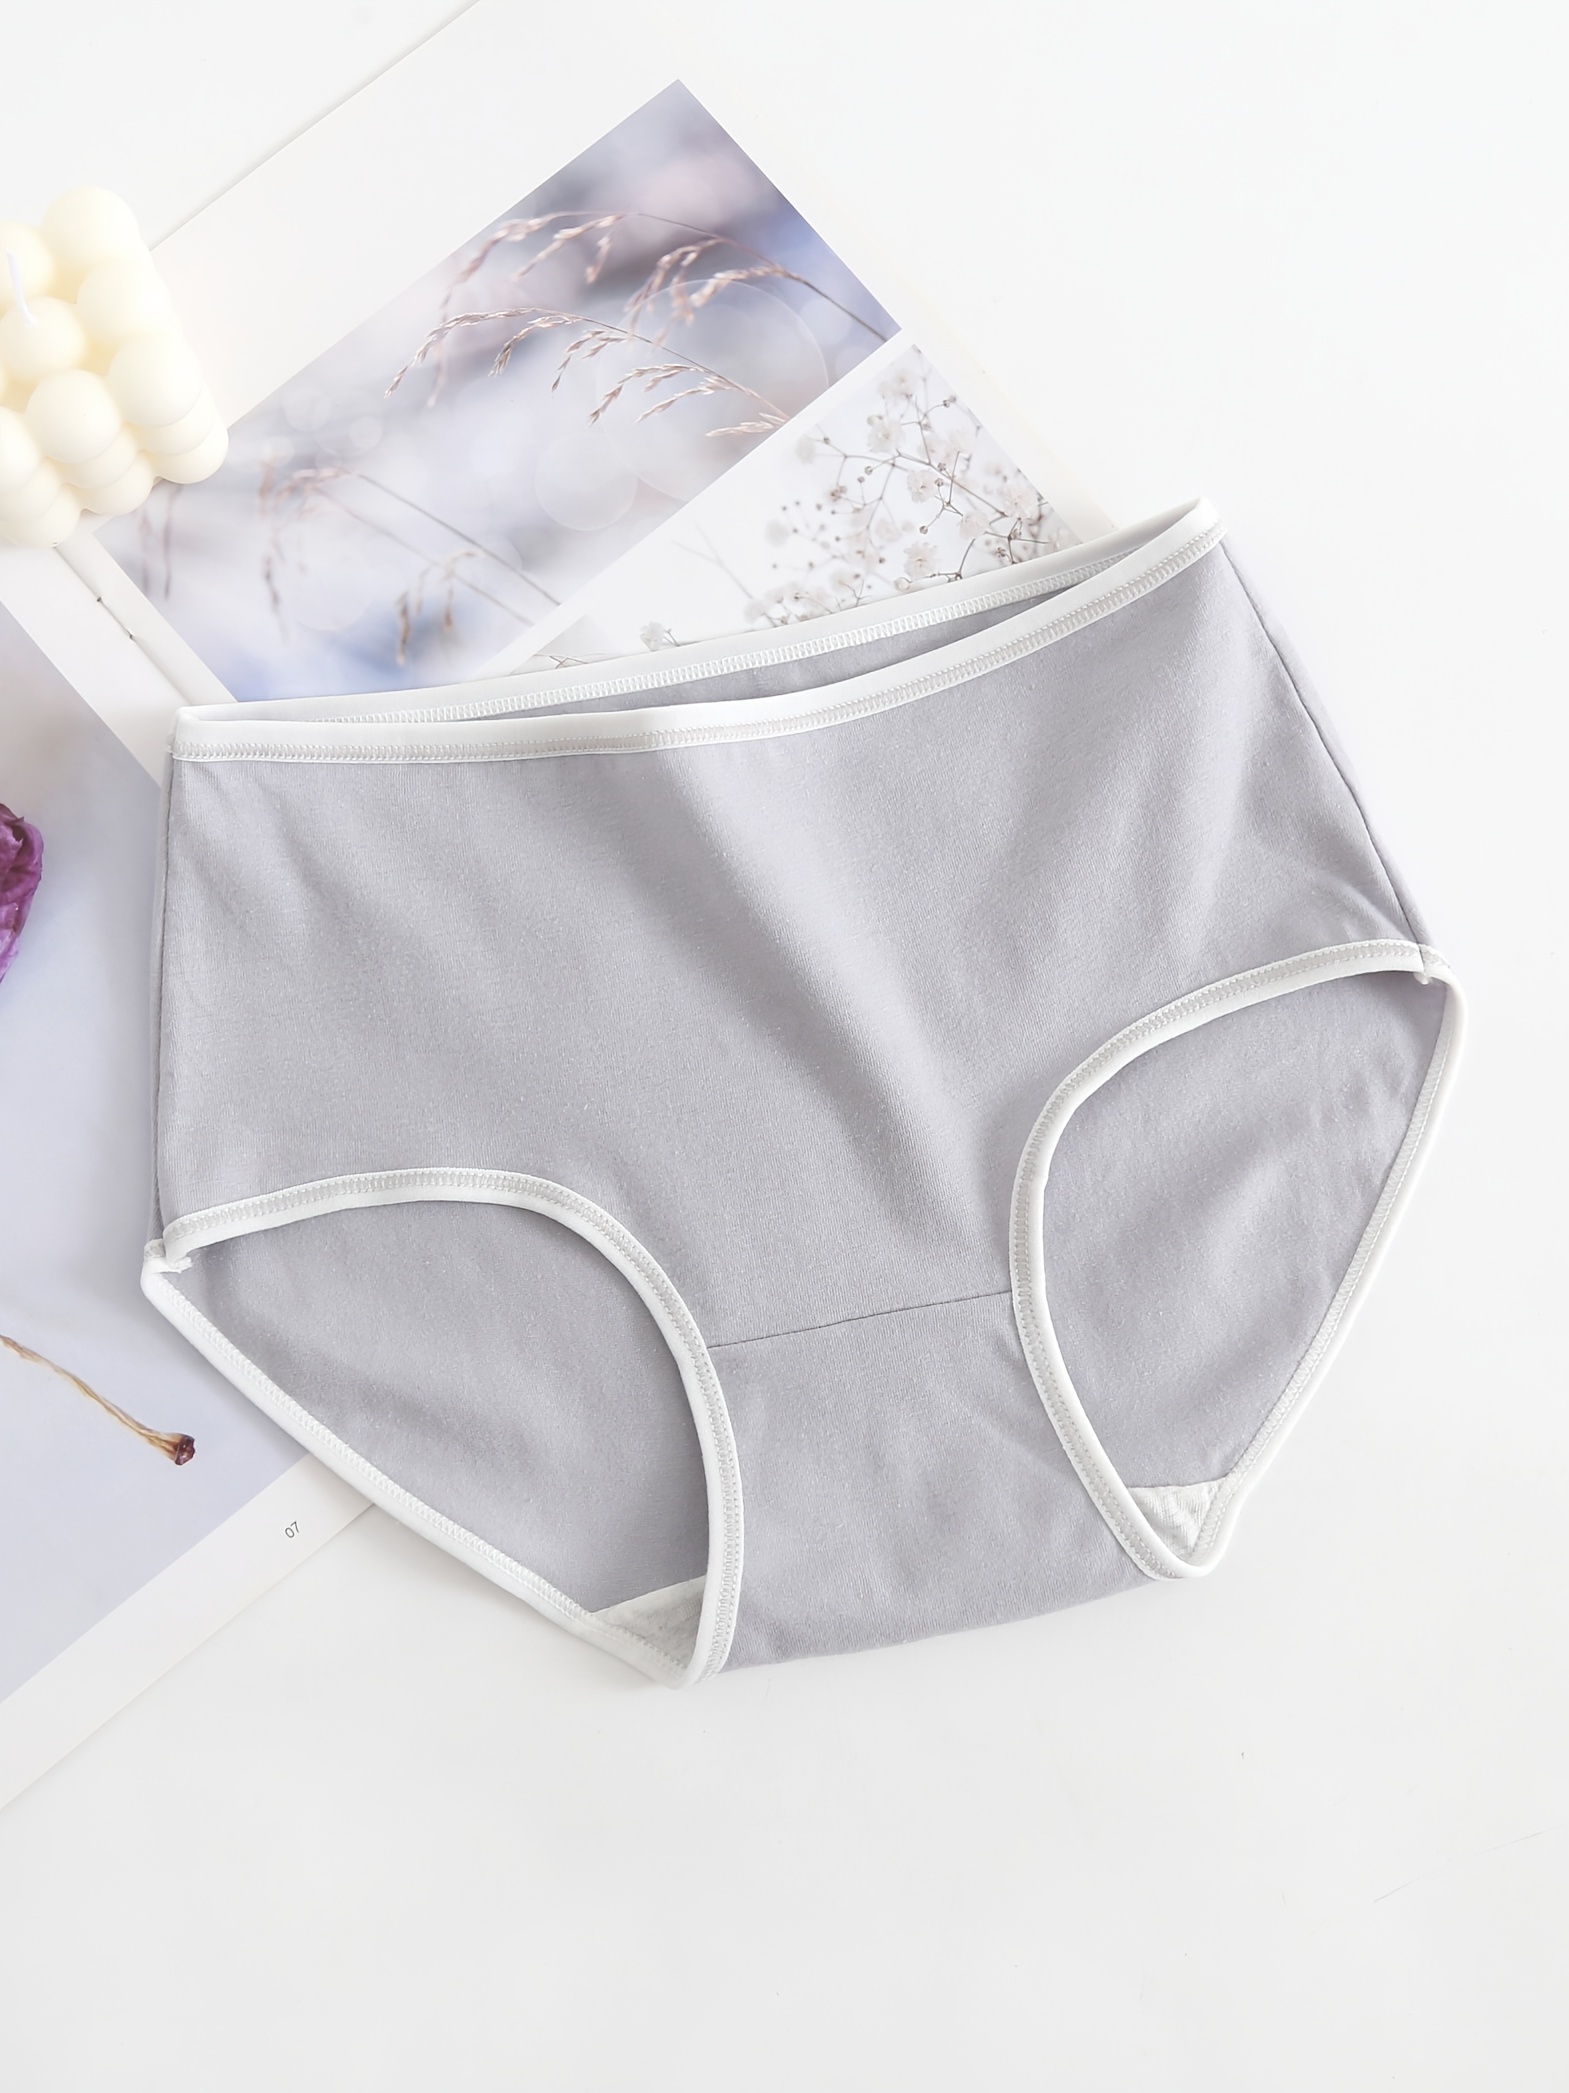 5 Pcs Simple Cotton Panties, Comfy & Breathable *-* Stretch Briefs Panties,  Women's Lingerie & Underwear